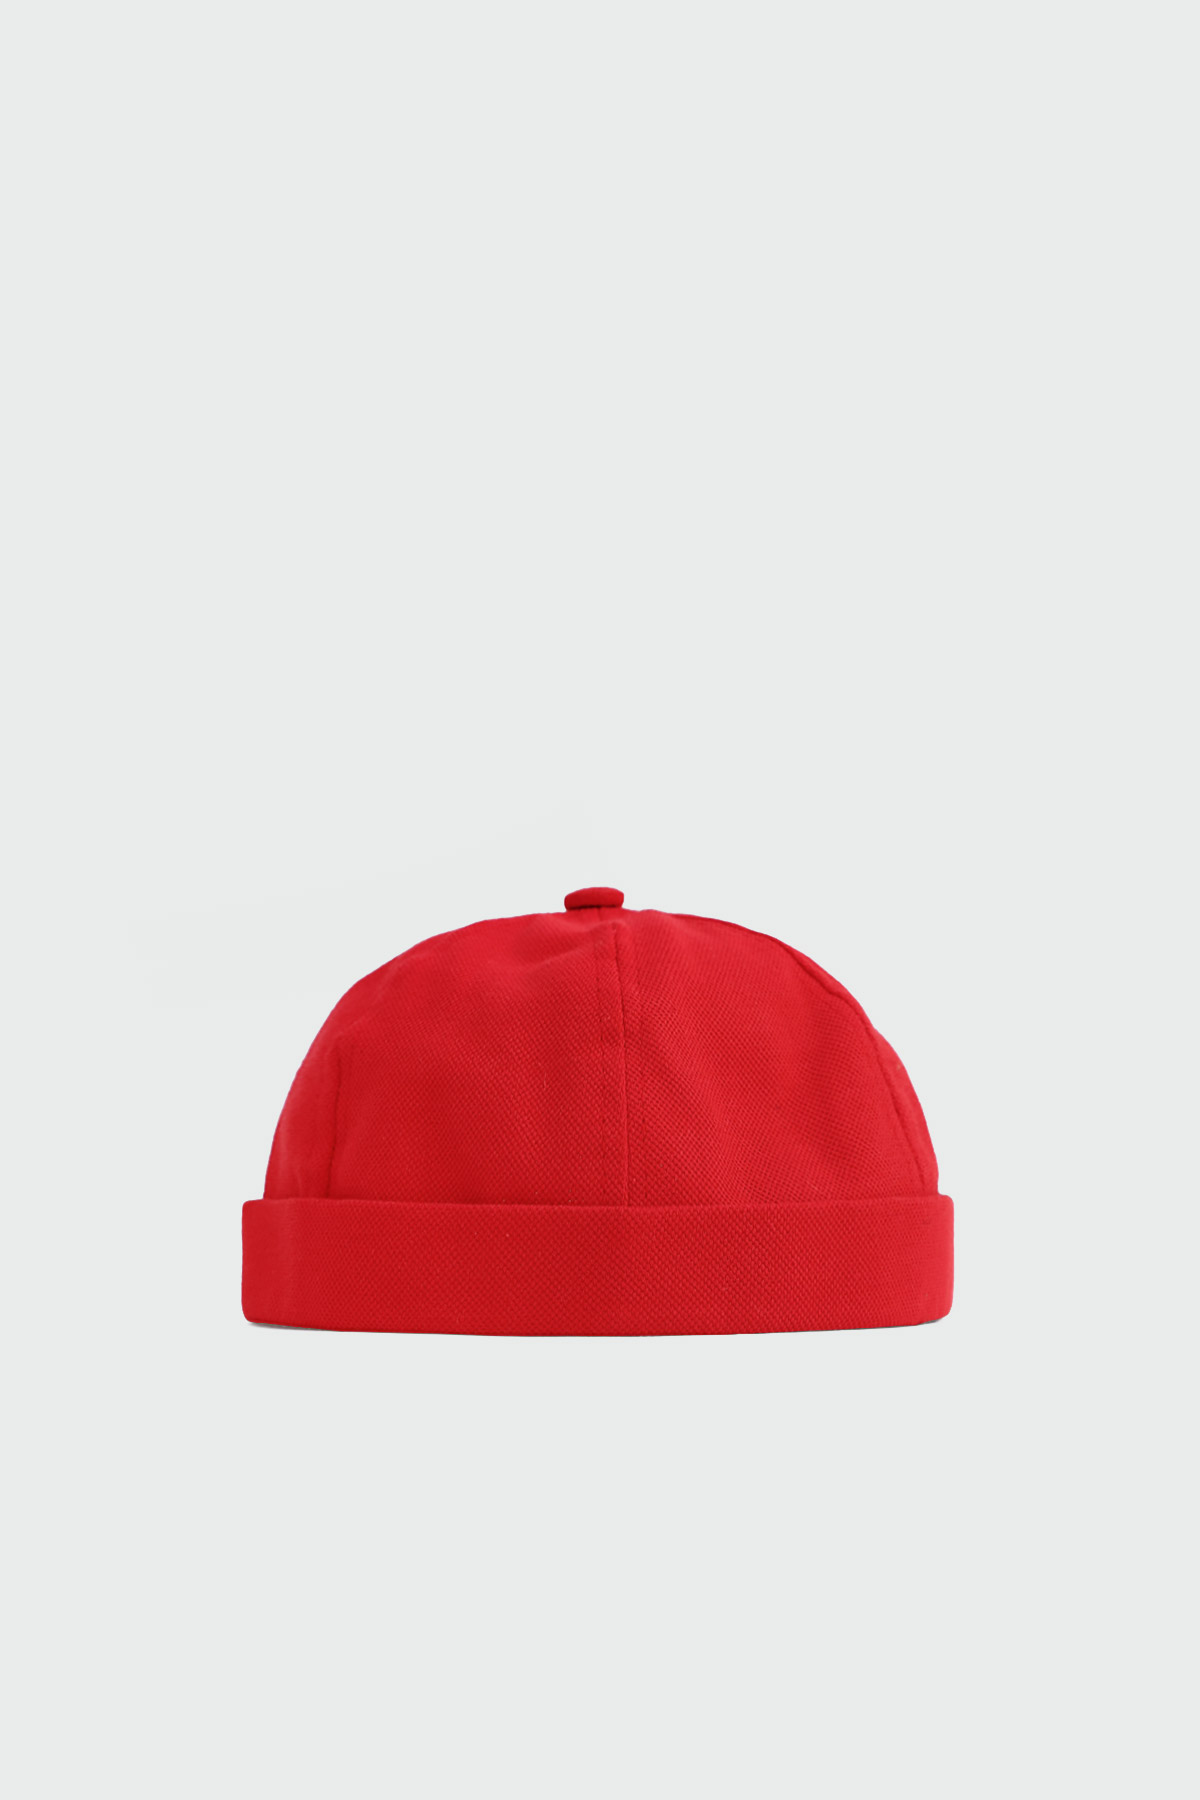 Denim Kasket Kırmızı Kadın Şapka